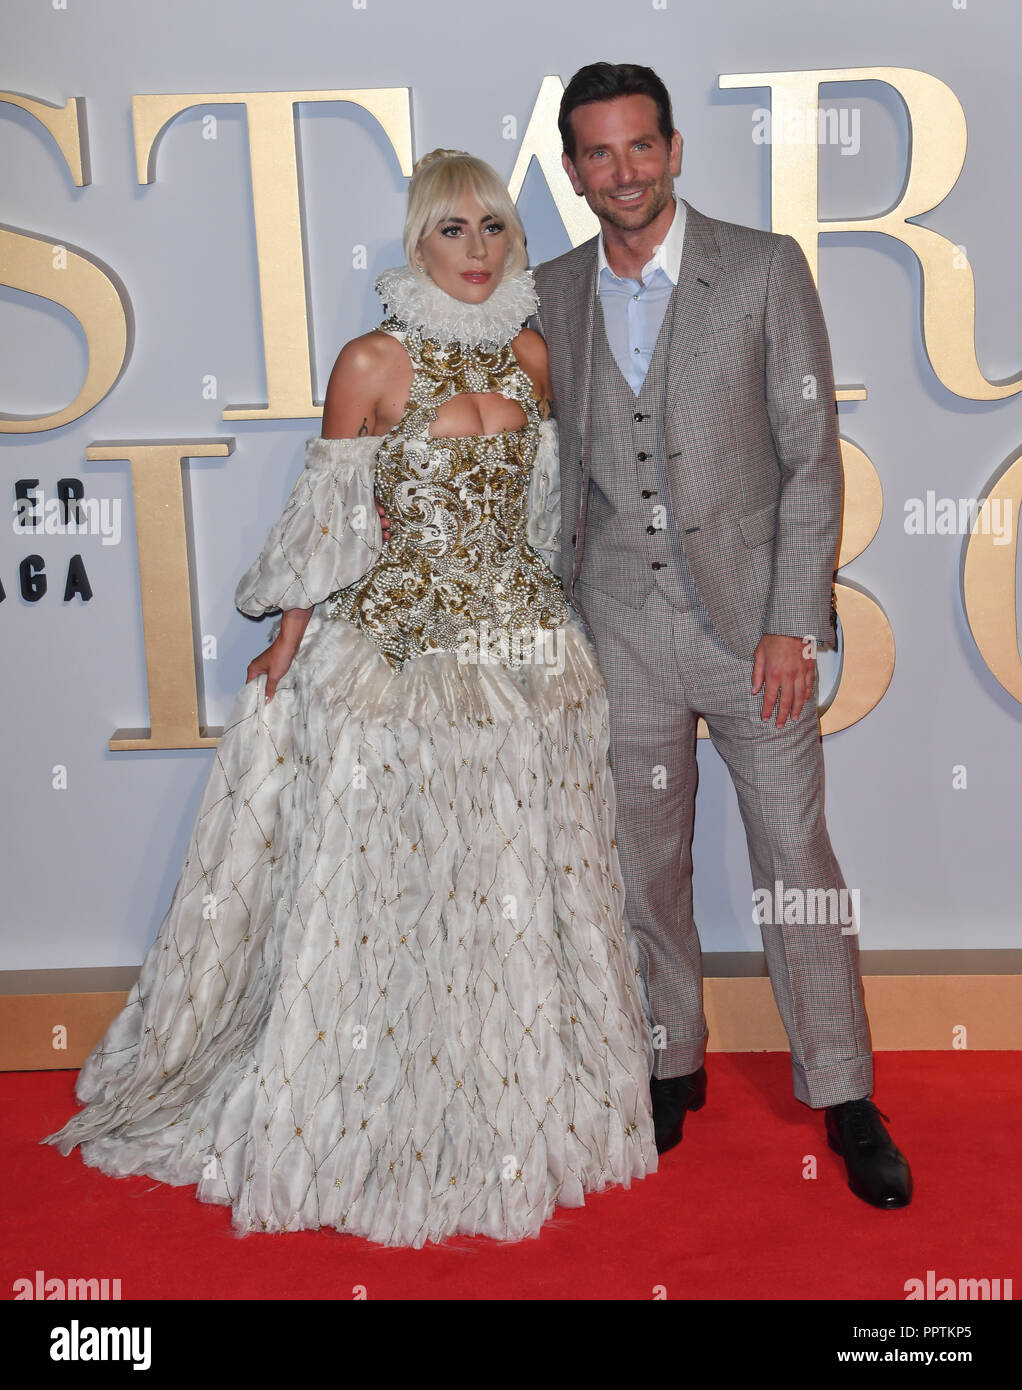 Londres, Royaume-Uni. 27 septembre 2018. Lady Gaga , Bradley Cooper assister à une étoile est née UK Premiere à vue Cinemas, Leicester Square, Londres, Royaume-Uni 27 septembre 2018. Credit Photo : Alamy/Capital Live News Banque D'Images